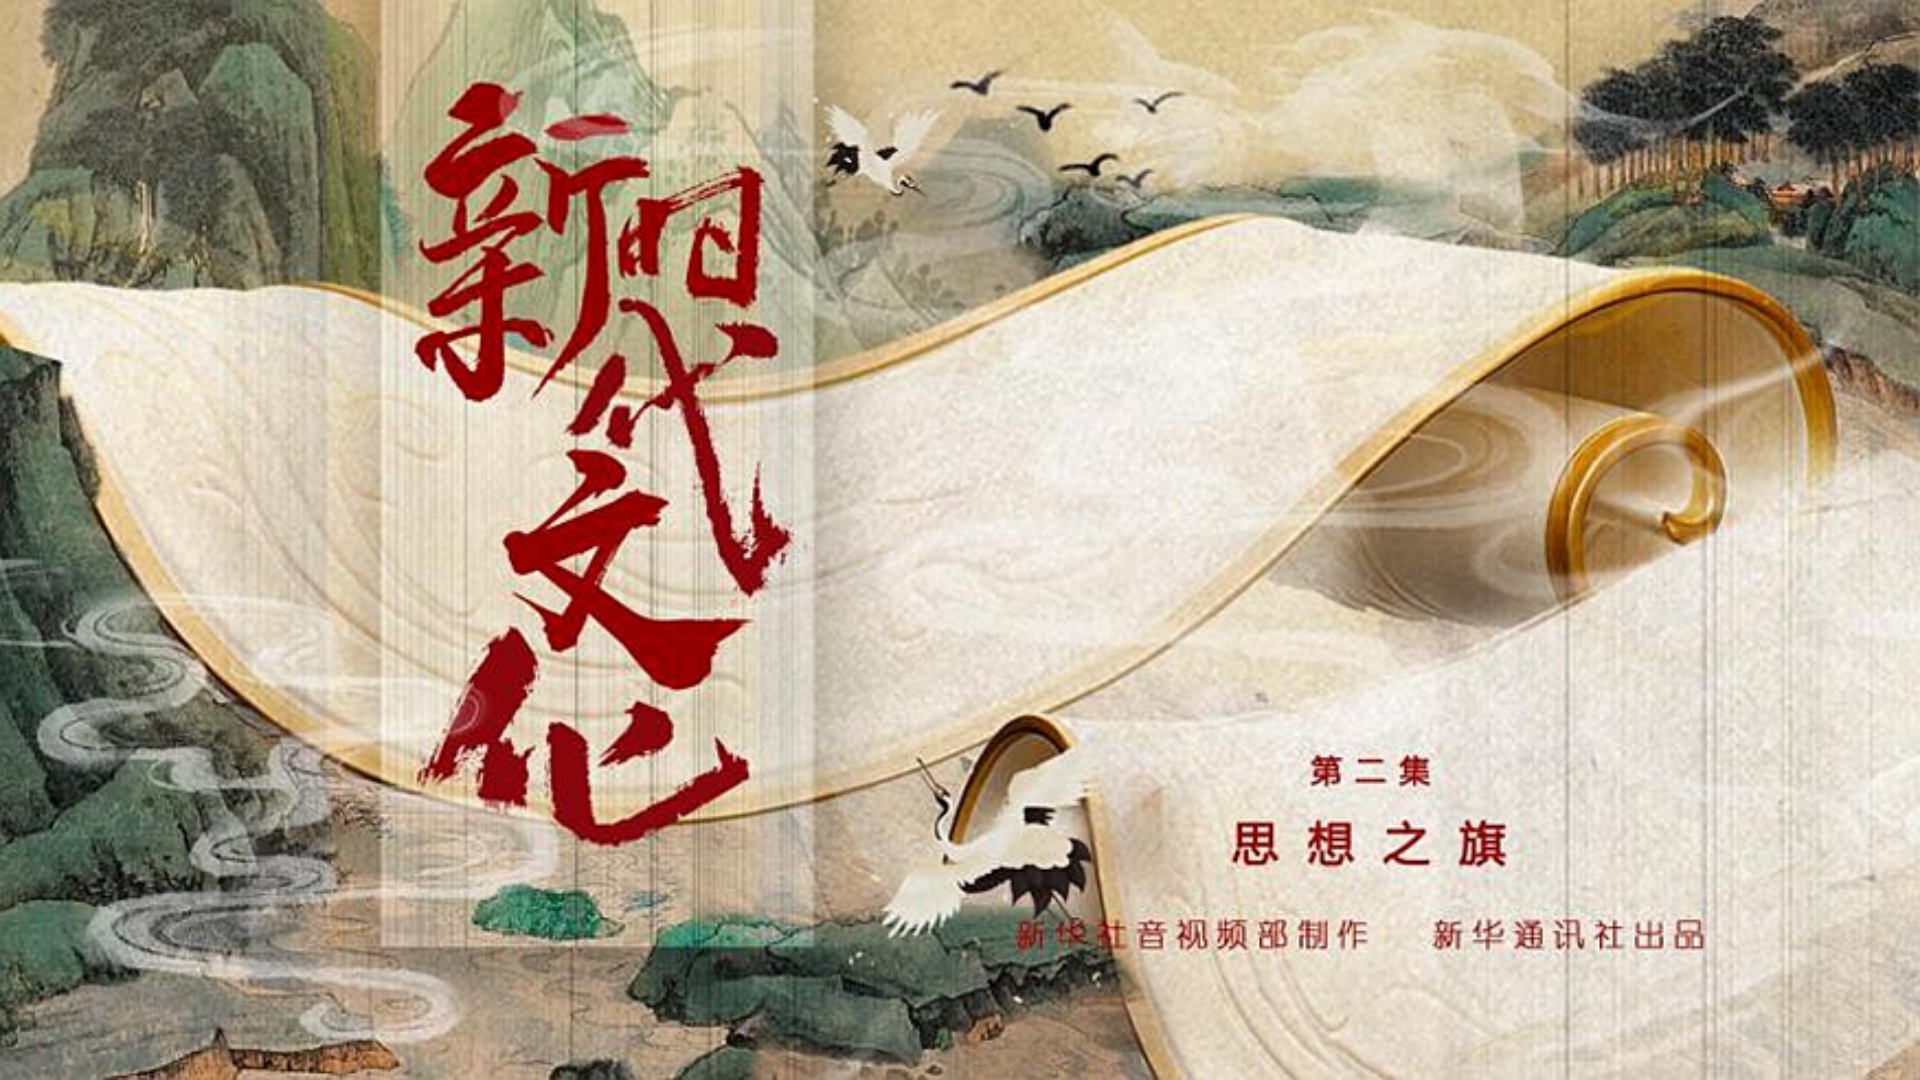 五集政论片《新时代文化》第二集《思想之旗》-中国文明网